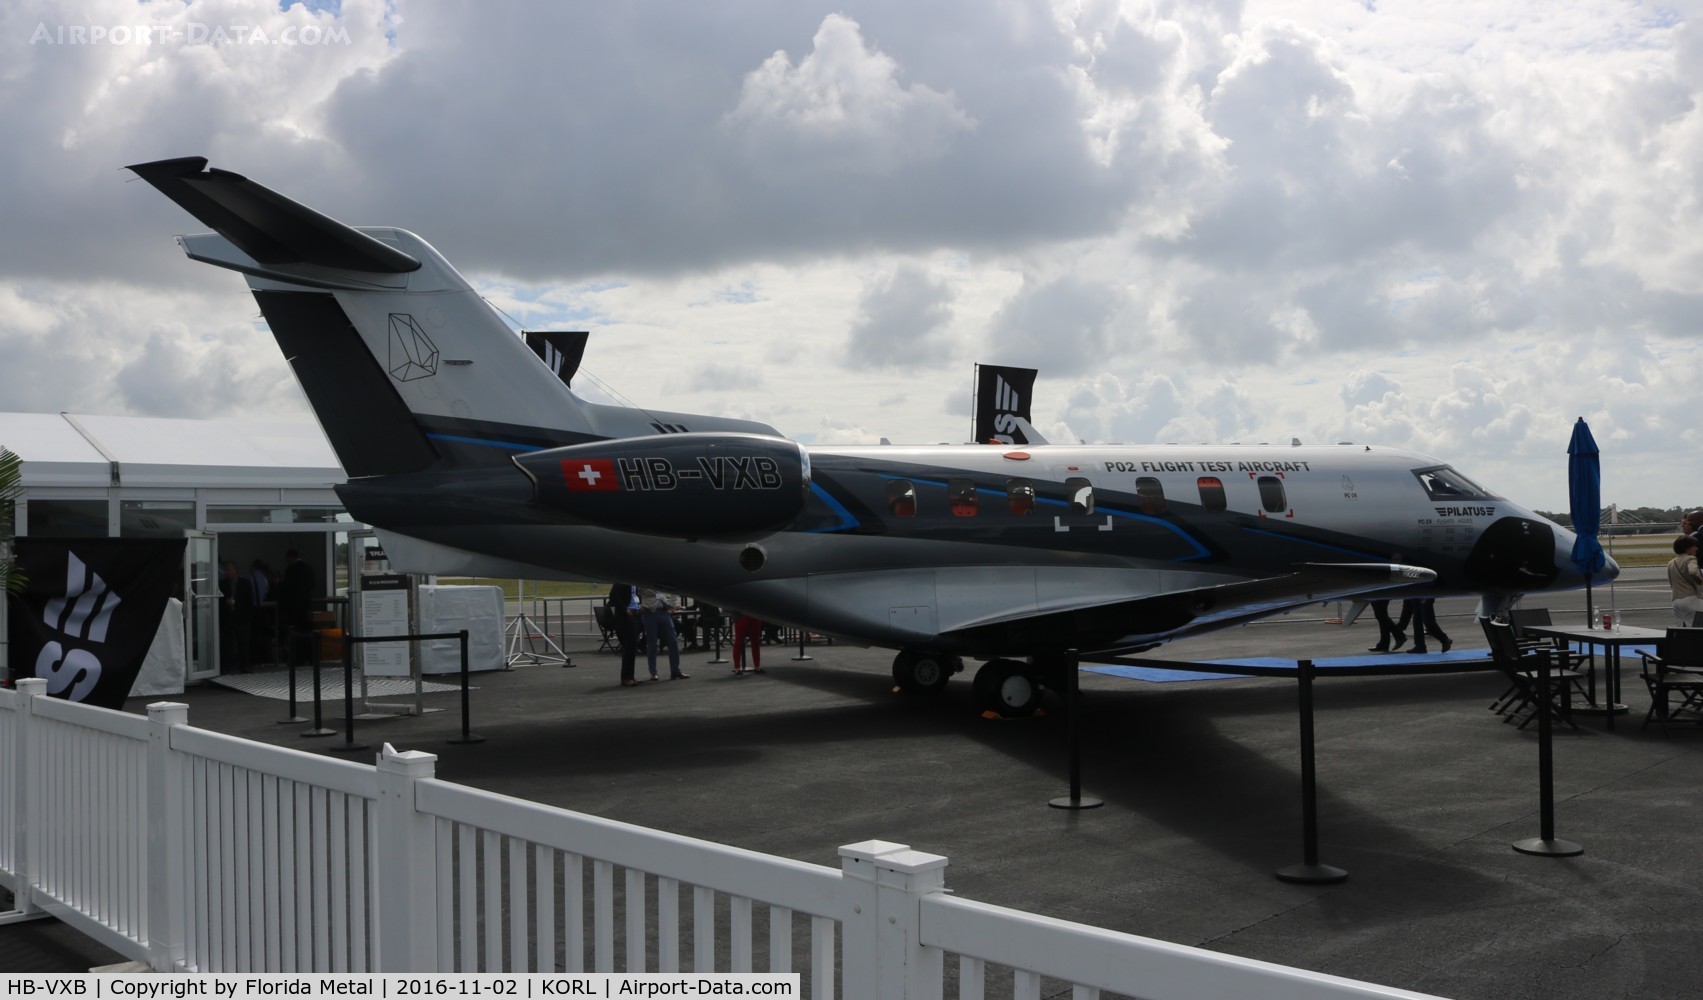 HB-VXB, 2015 Pilatus PC-24 C/N P02, PC-24 zx